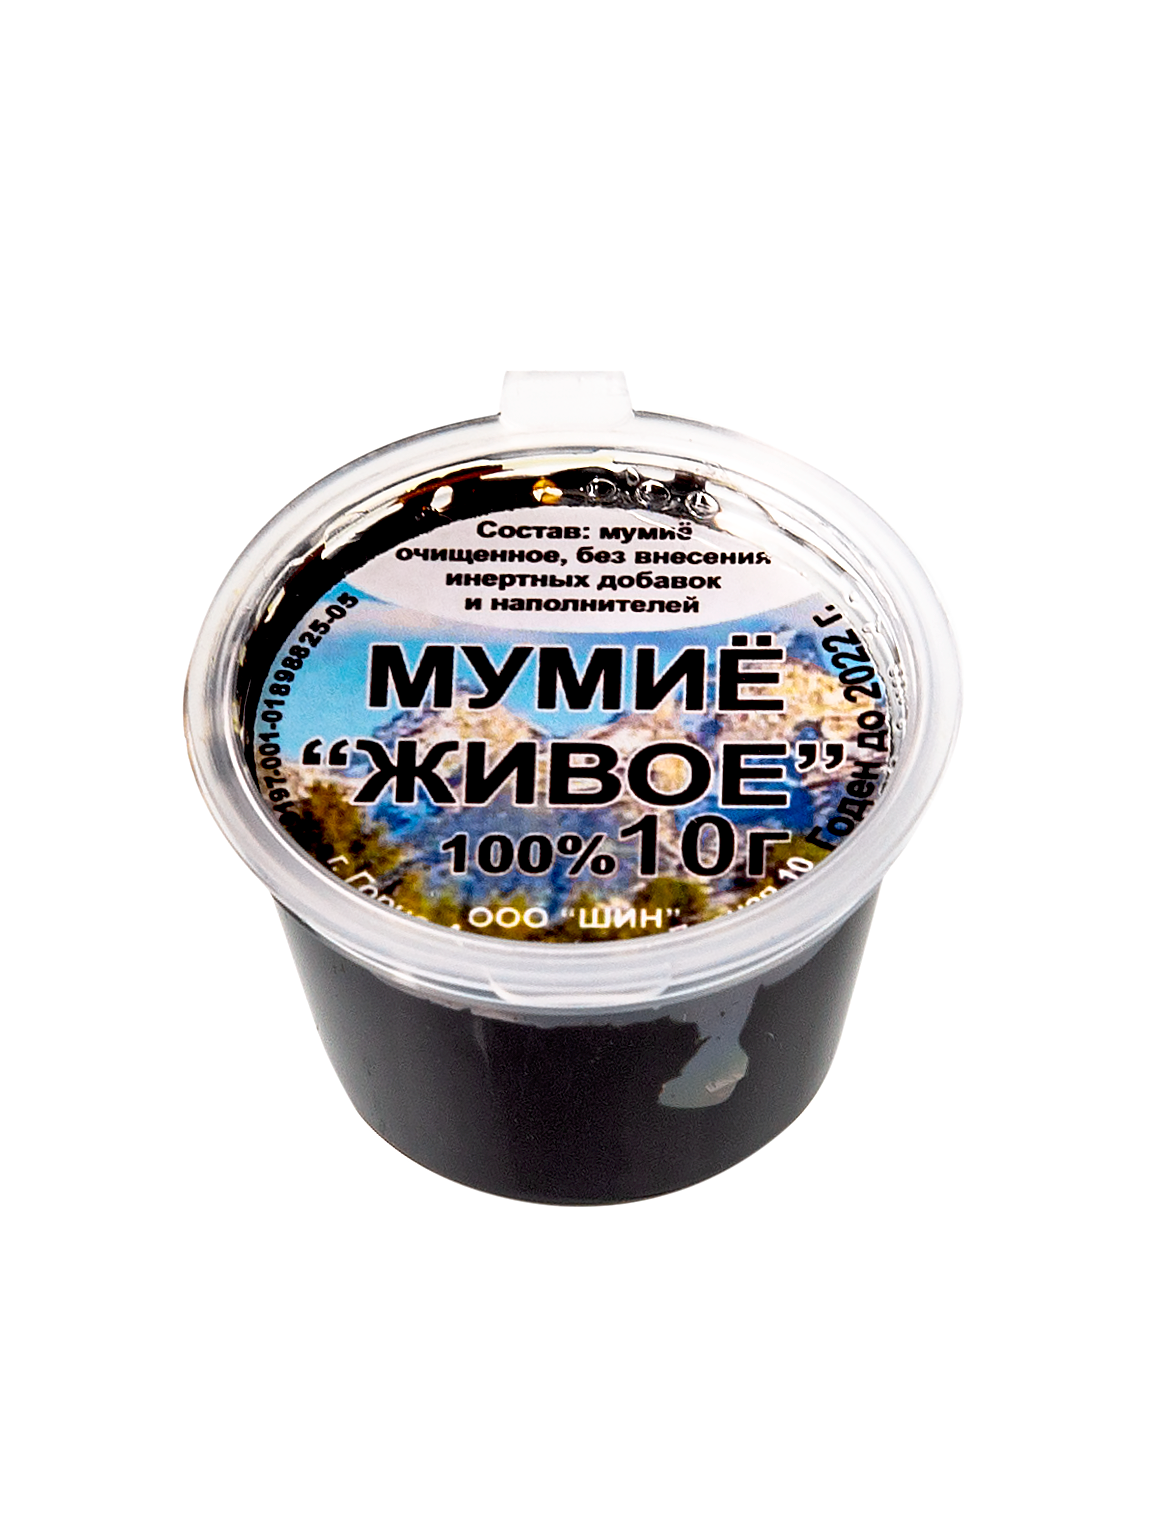 Мумиё Алтайское без добавок в Казани